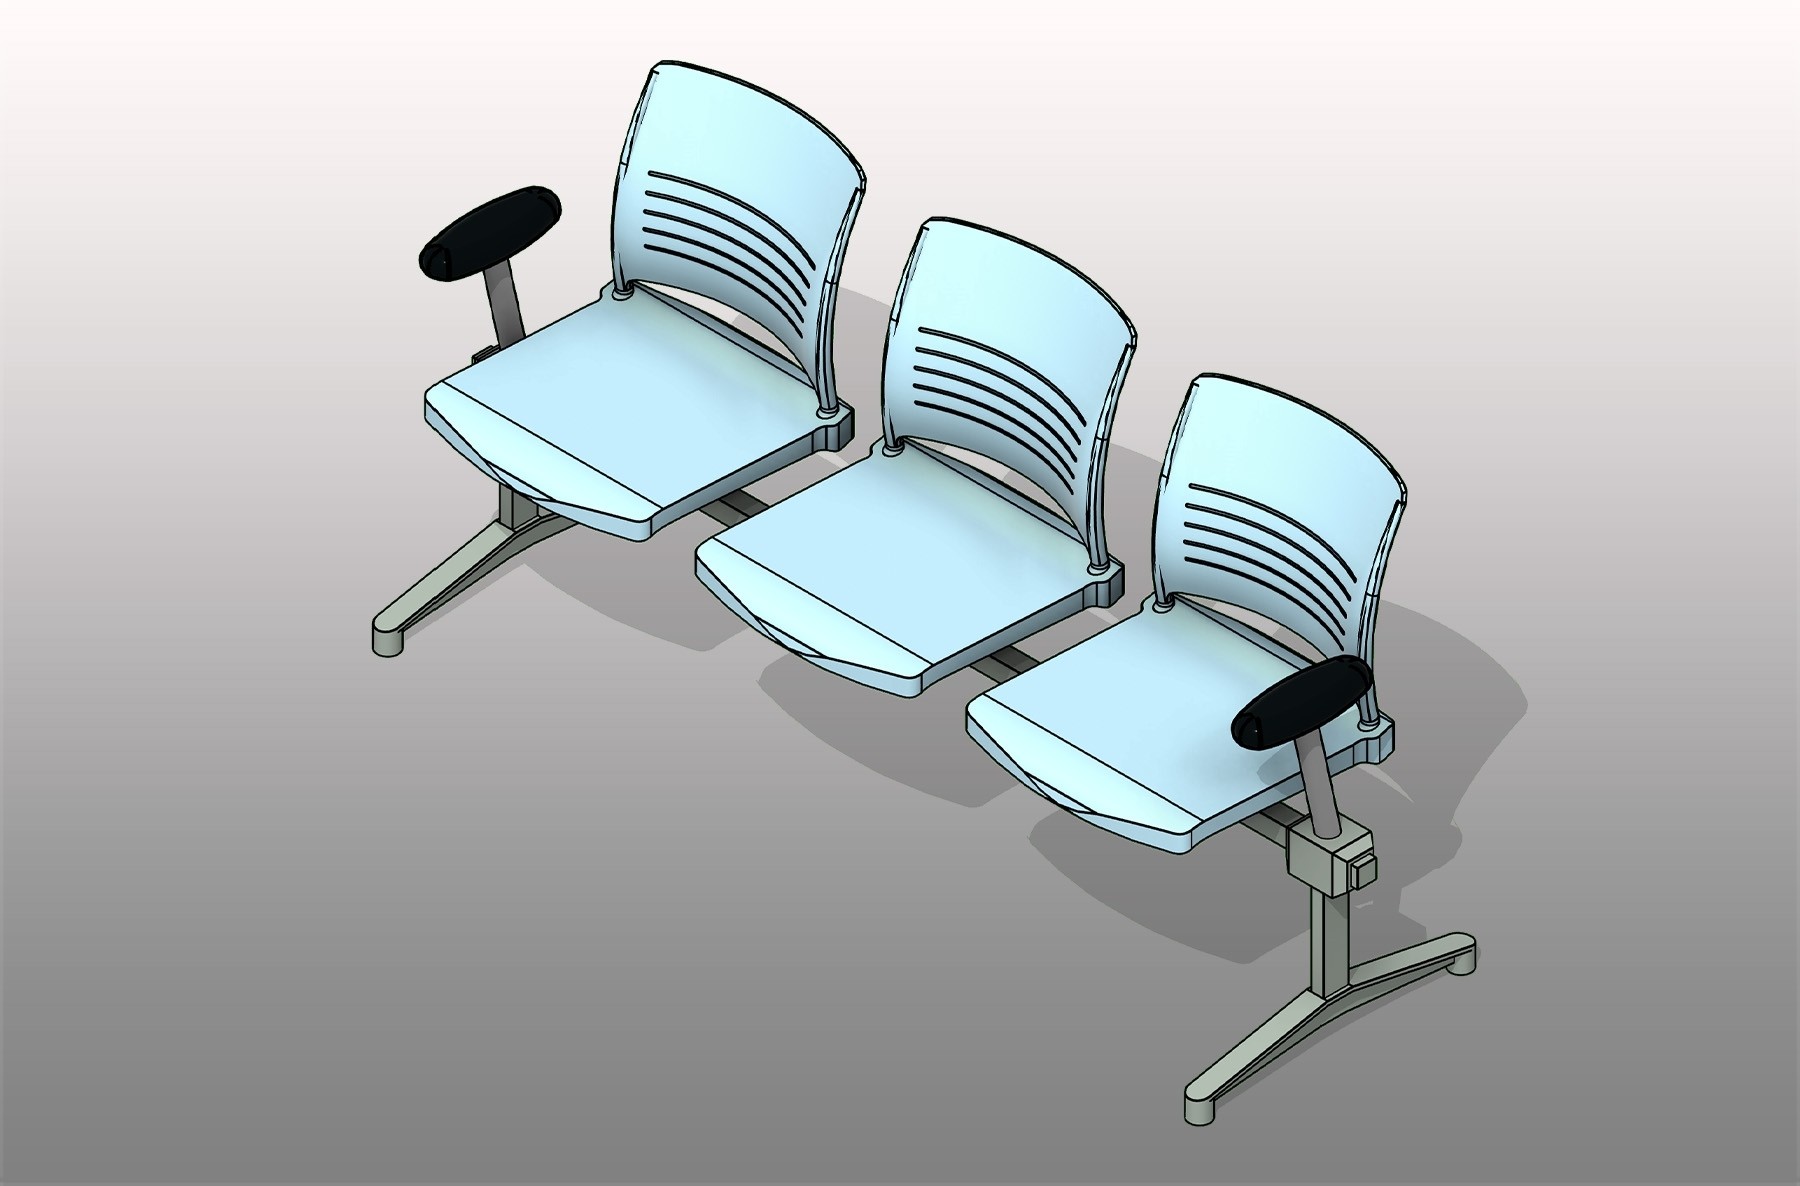 Tandem Armrests Polypropylene Seating